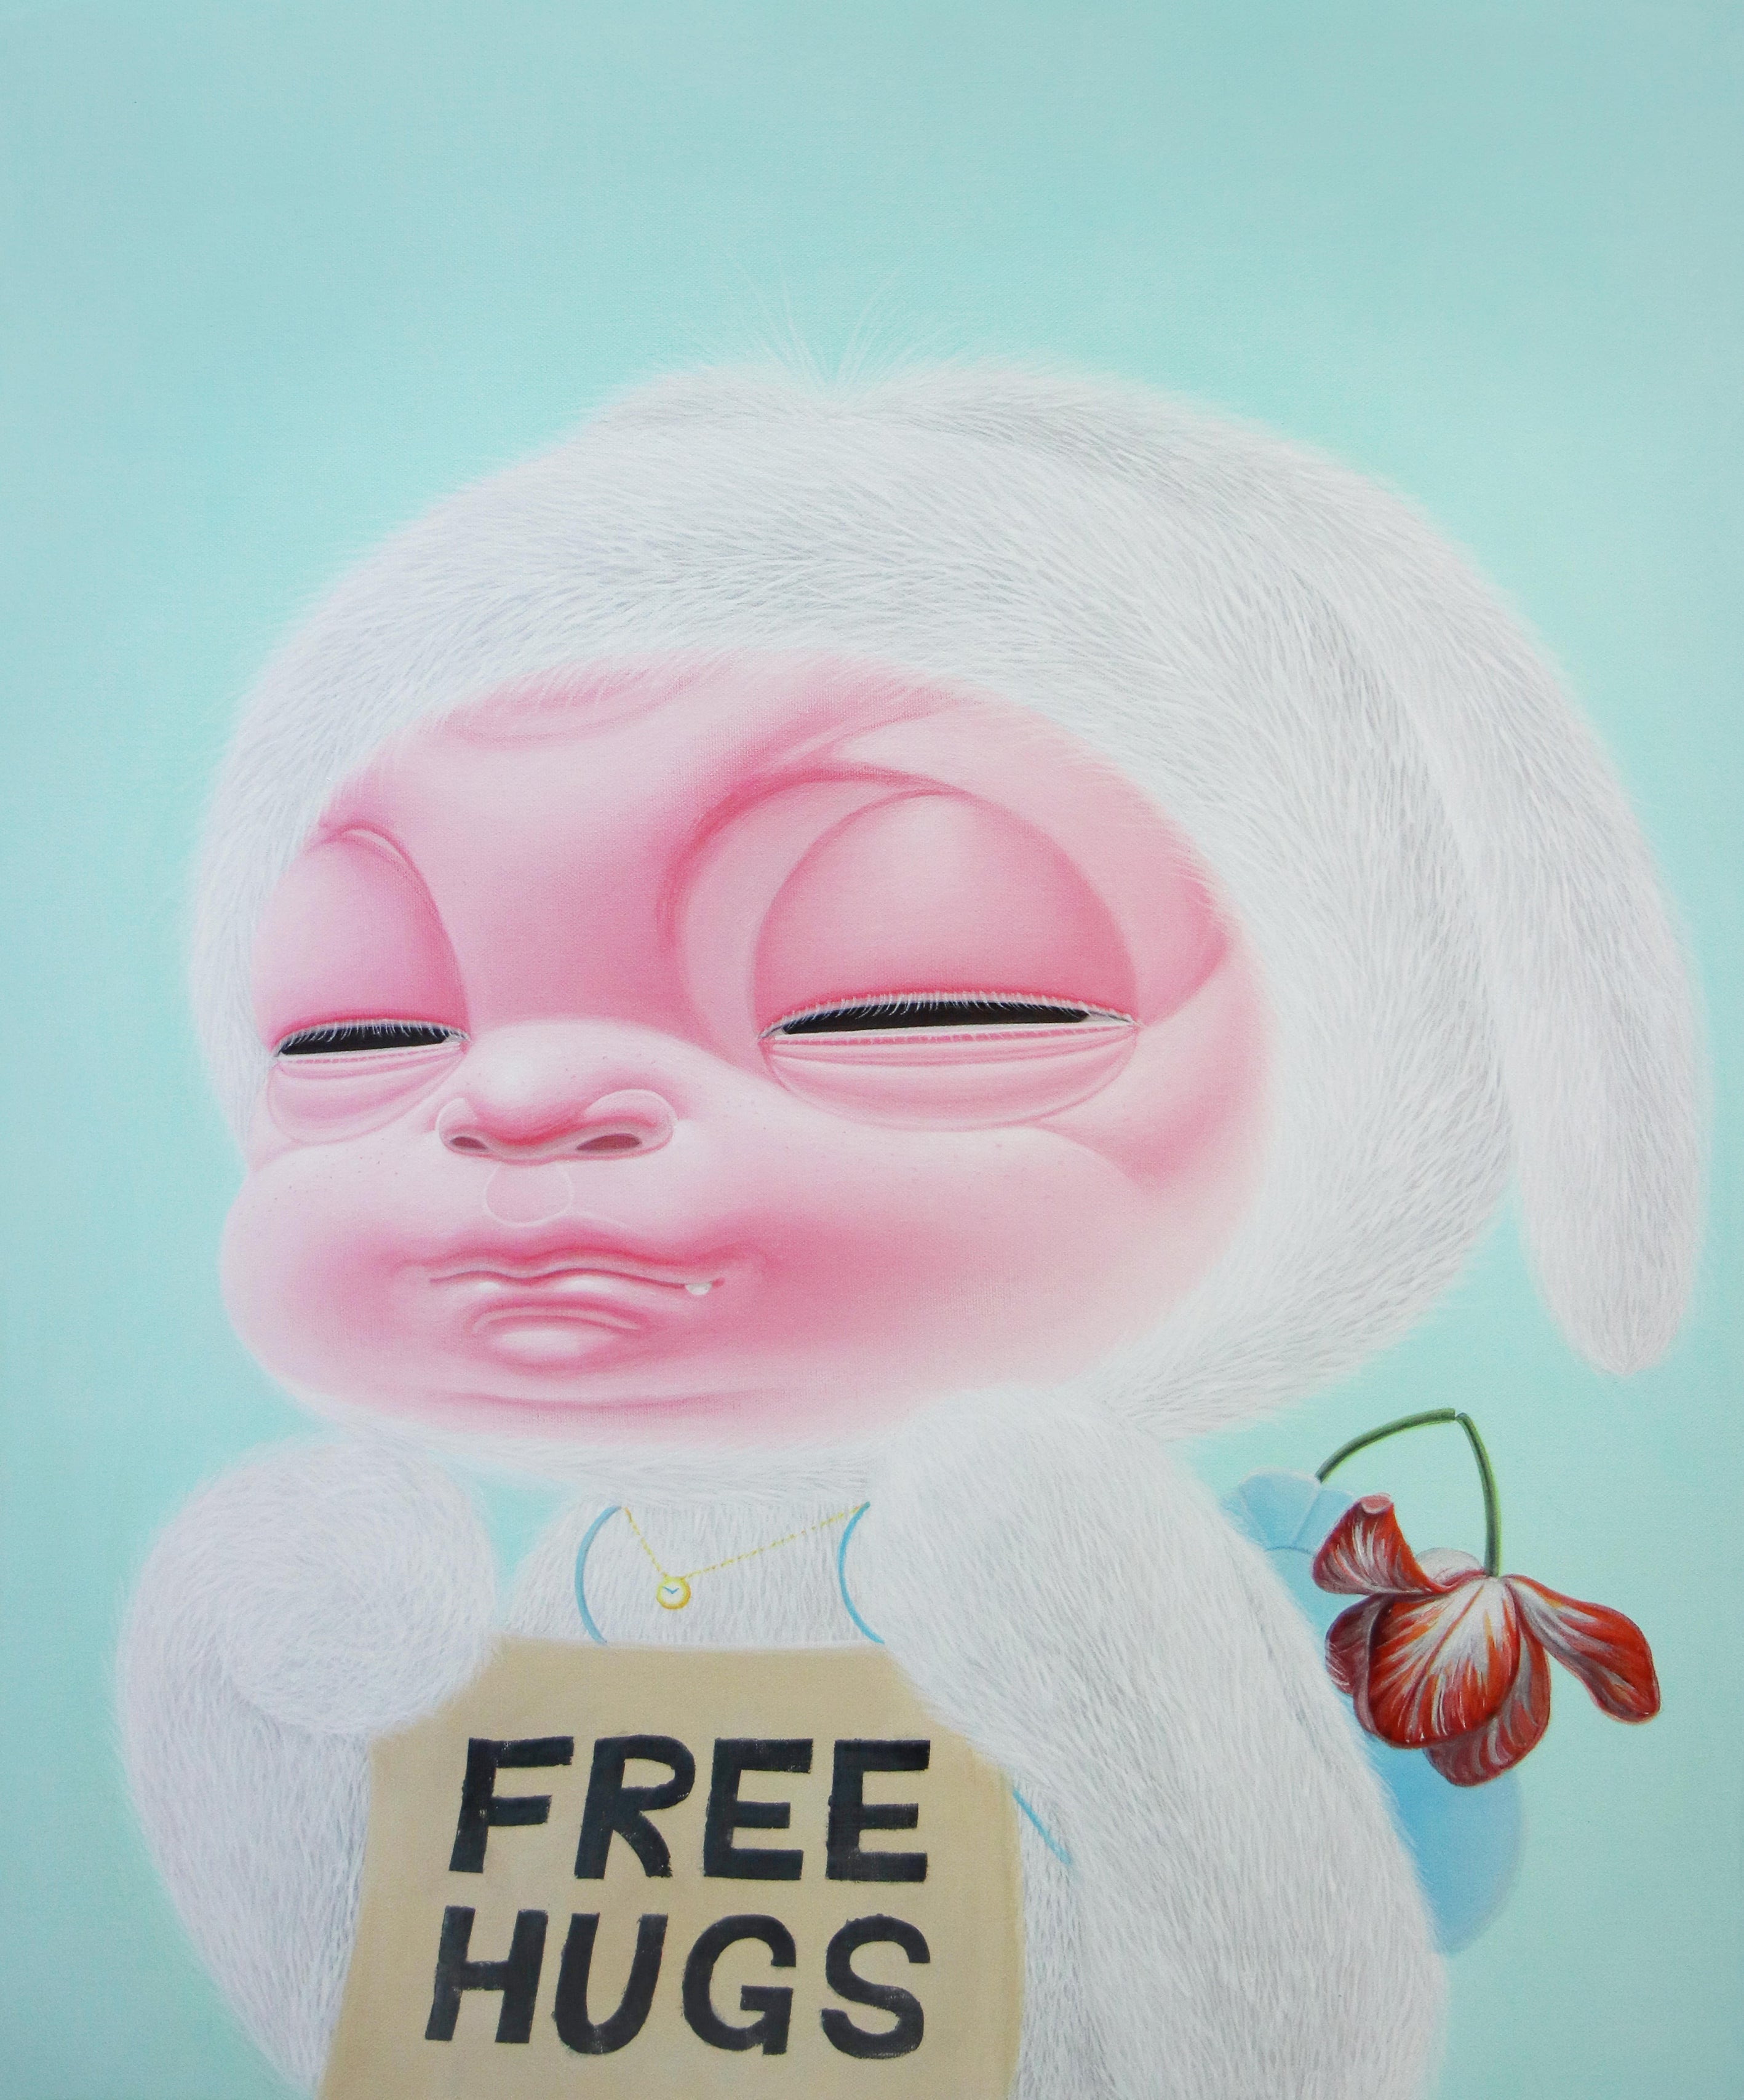 Free hugs by Ha Haeng Eun